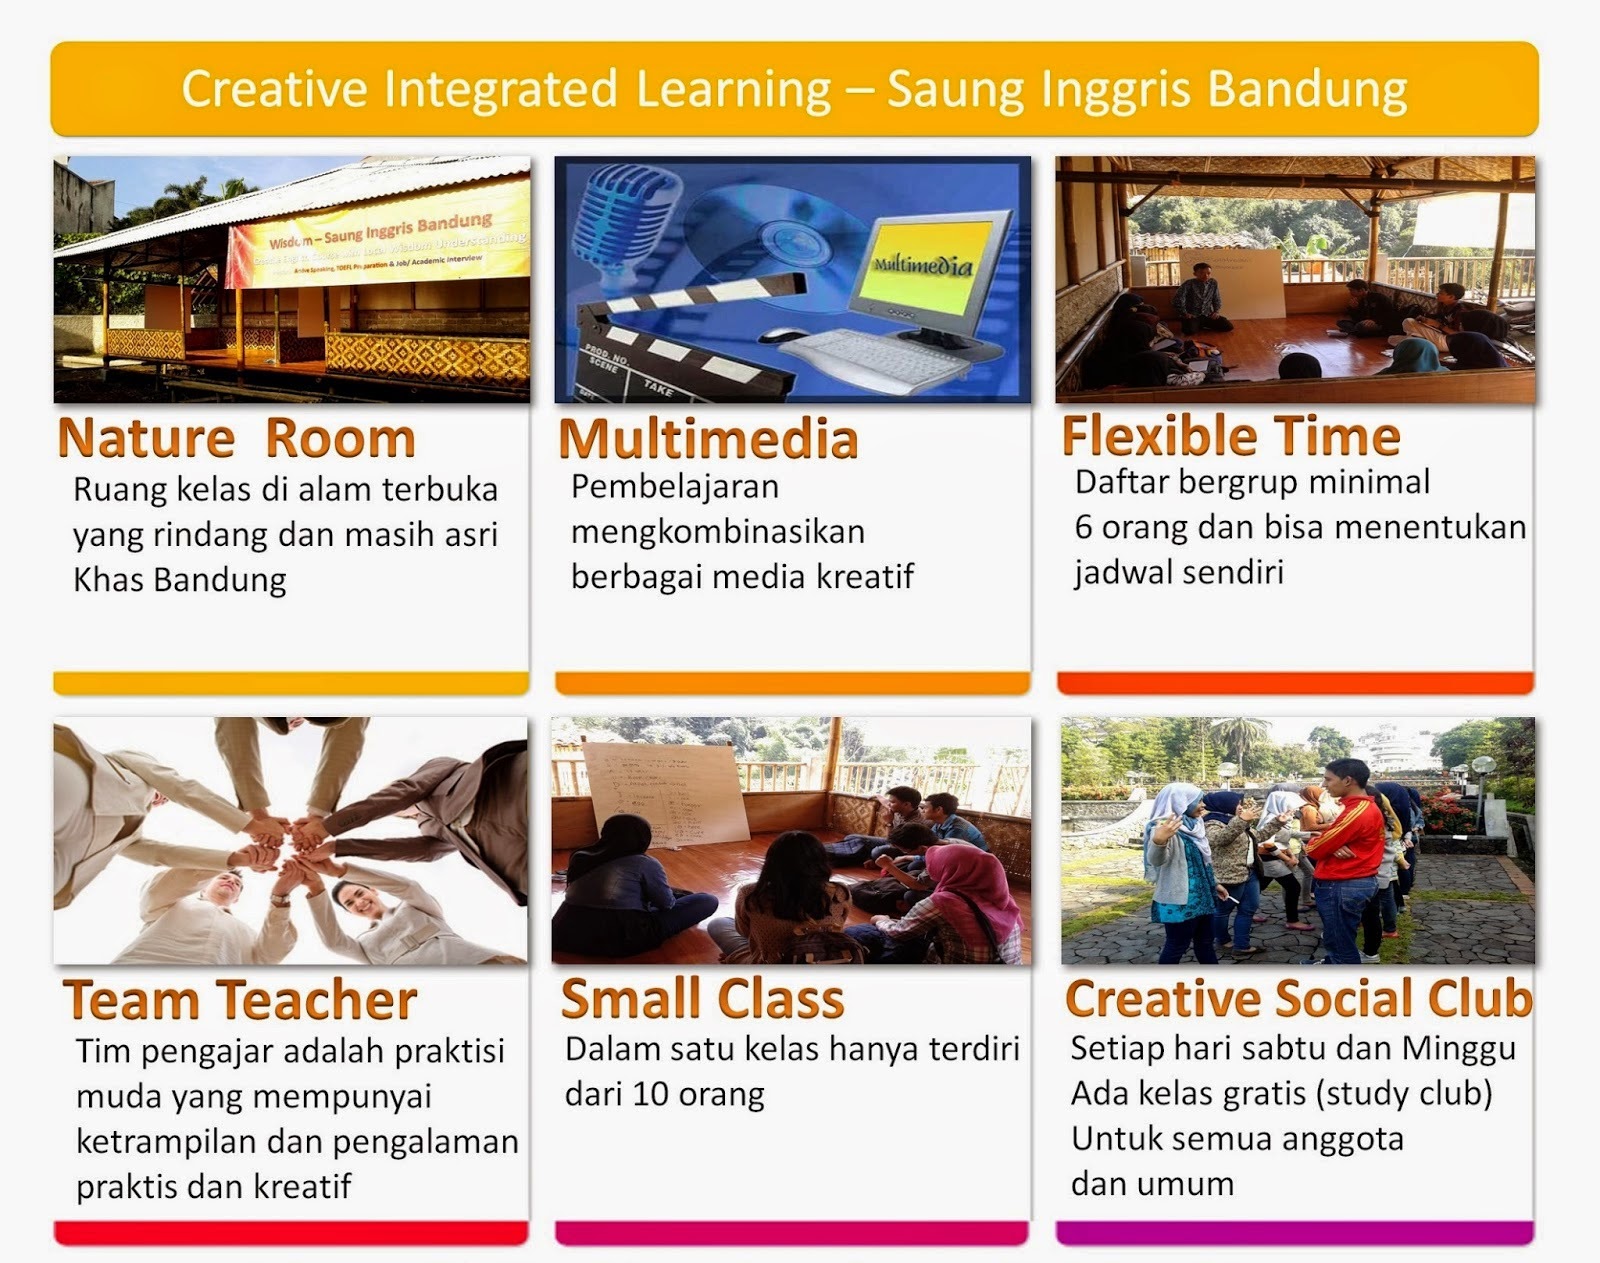 WE Academy Kampung Inggris Bandung adalah pusat pendidikan bahasa inggris dengan konsep berbasis komunitas dan sekolah alam yang kemudian dikenal sebagai